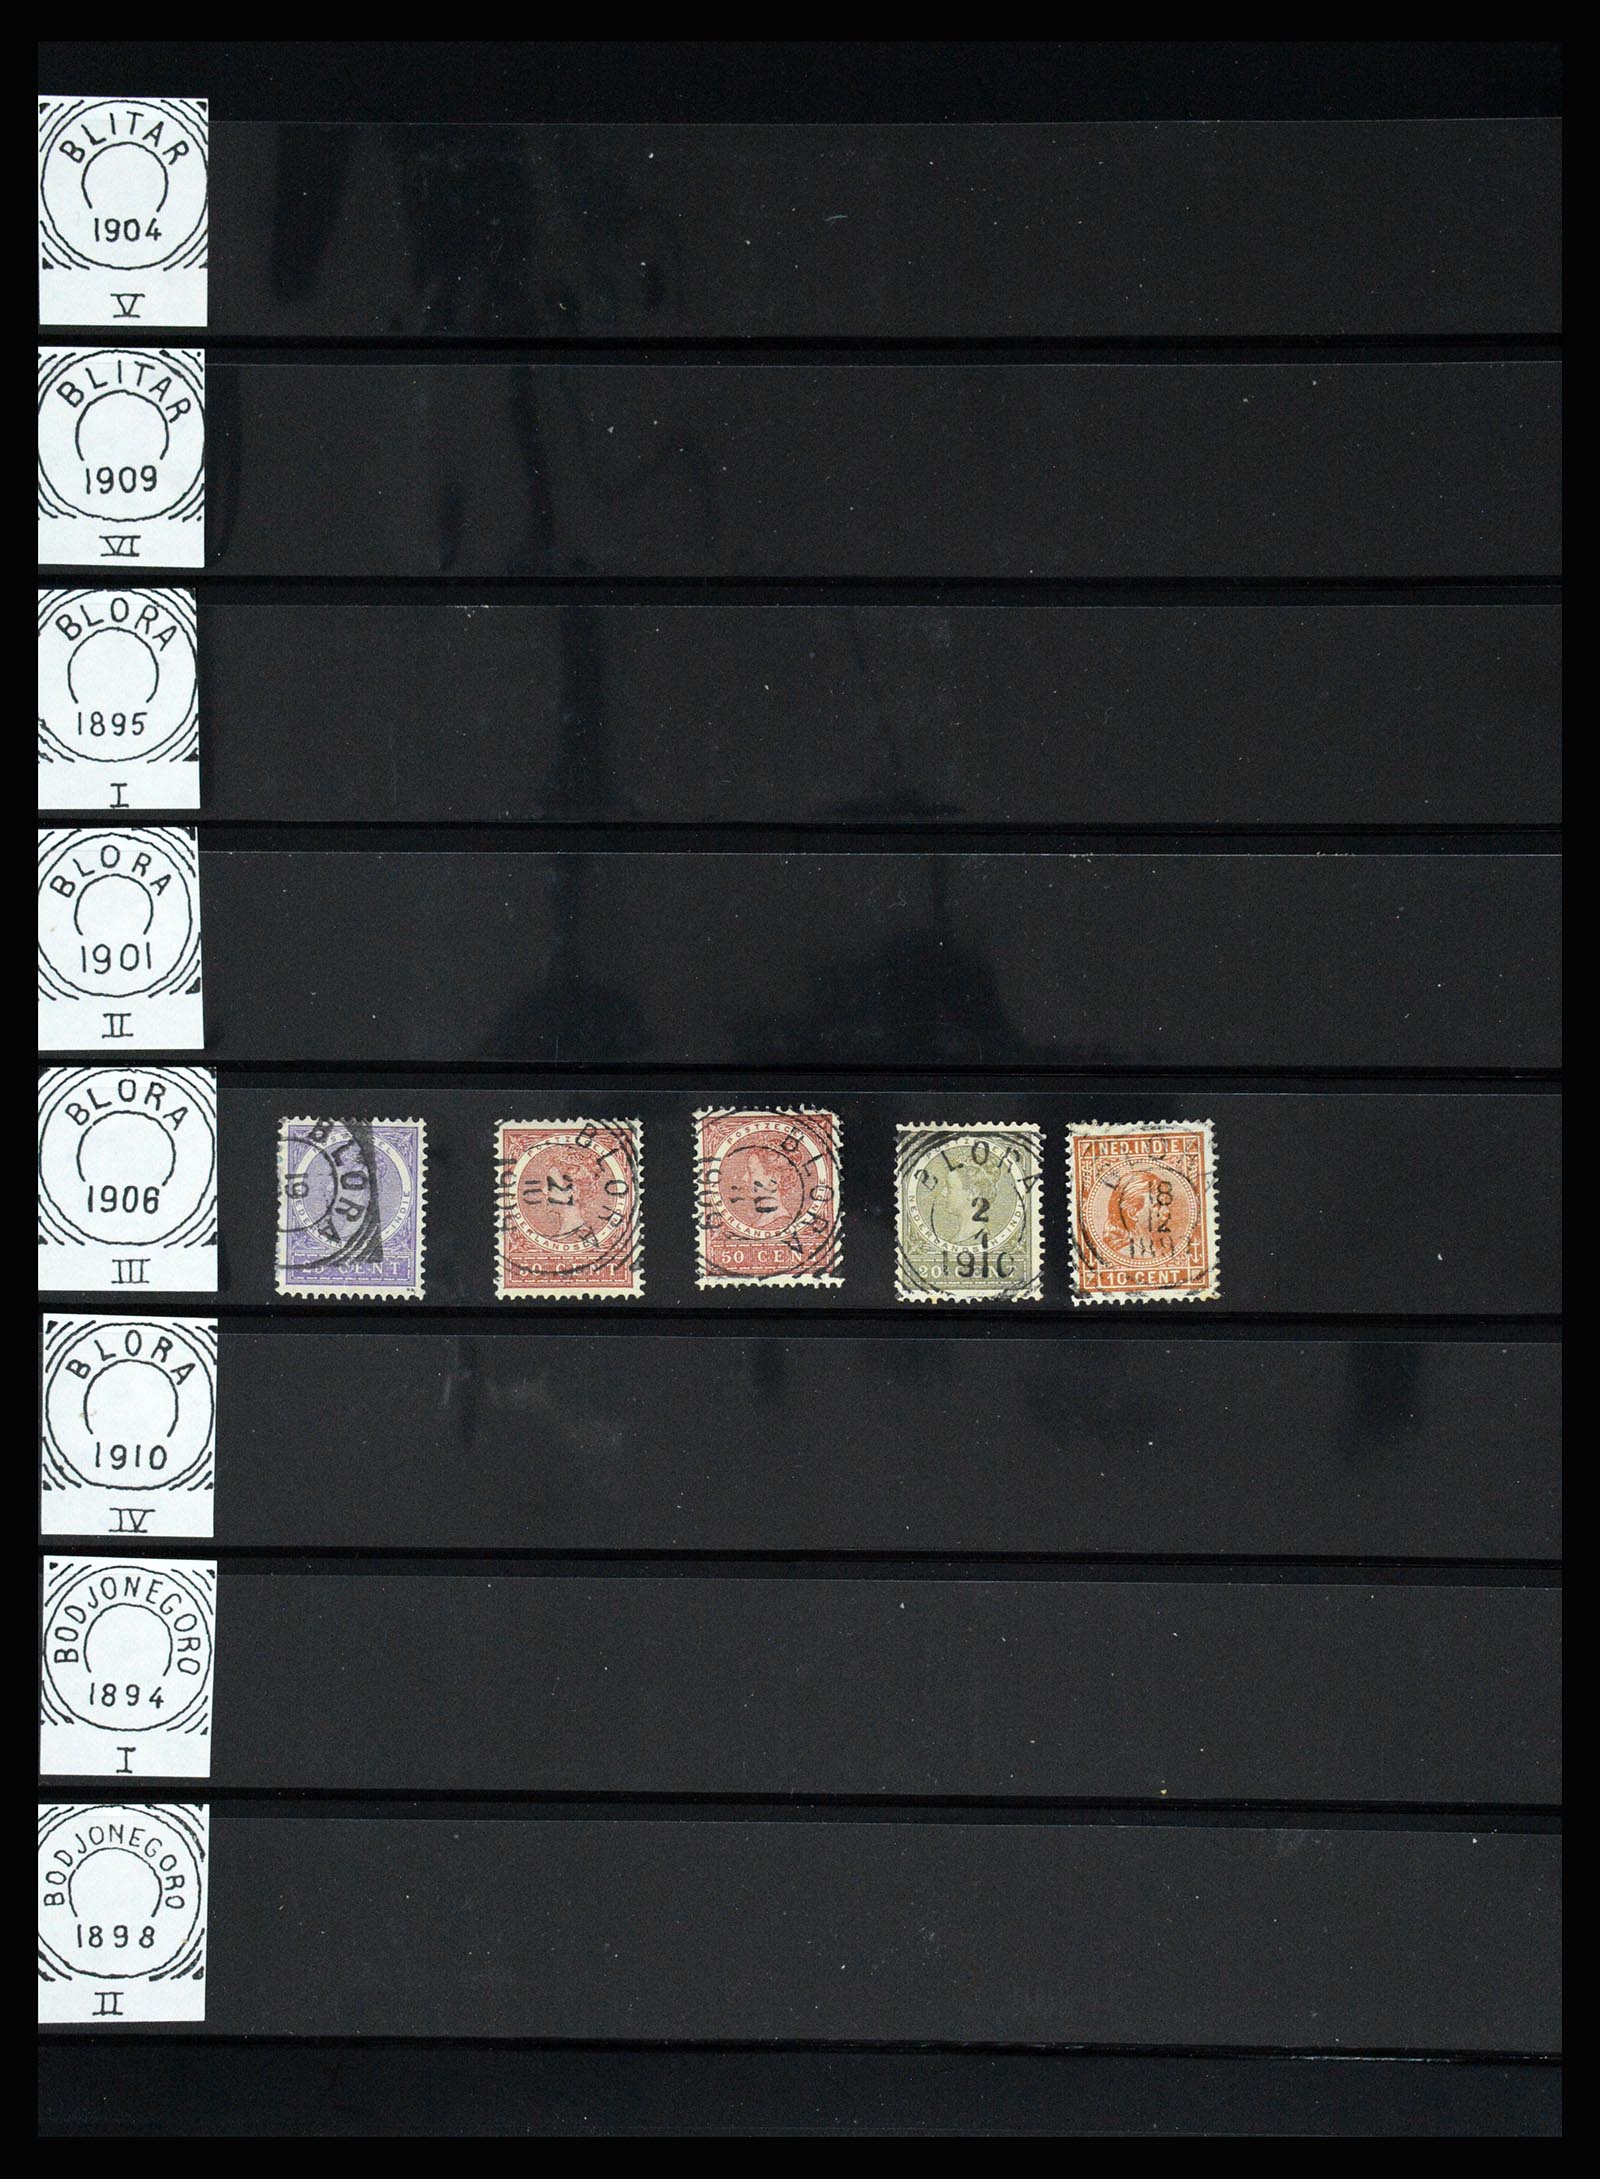 36512 111 - Stamp collection 36512 Nederlands Indië stempels 1872-1930.